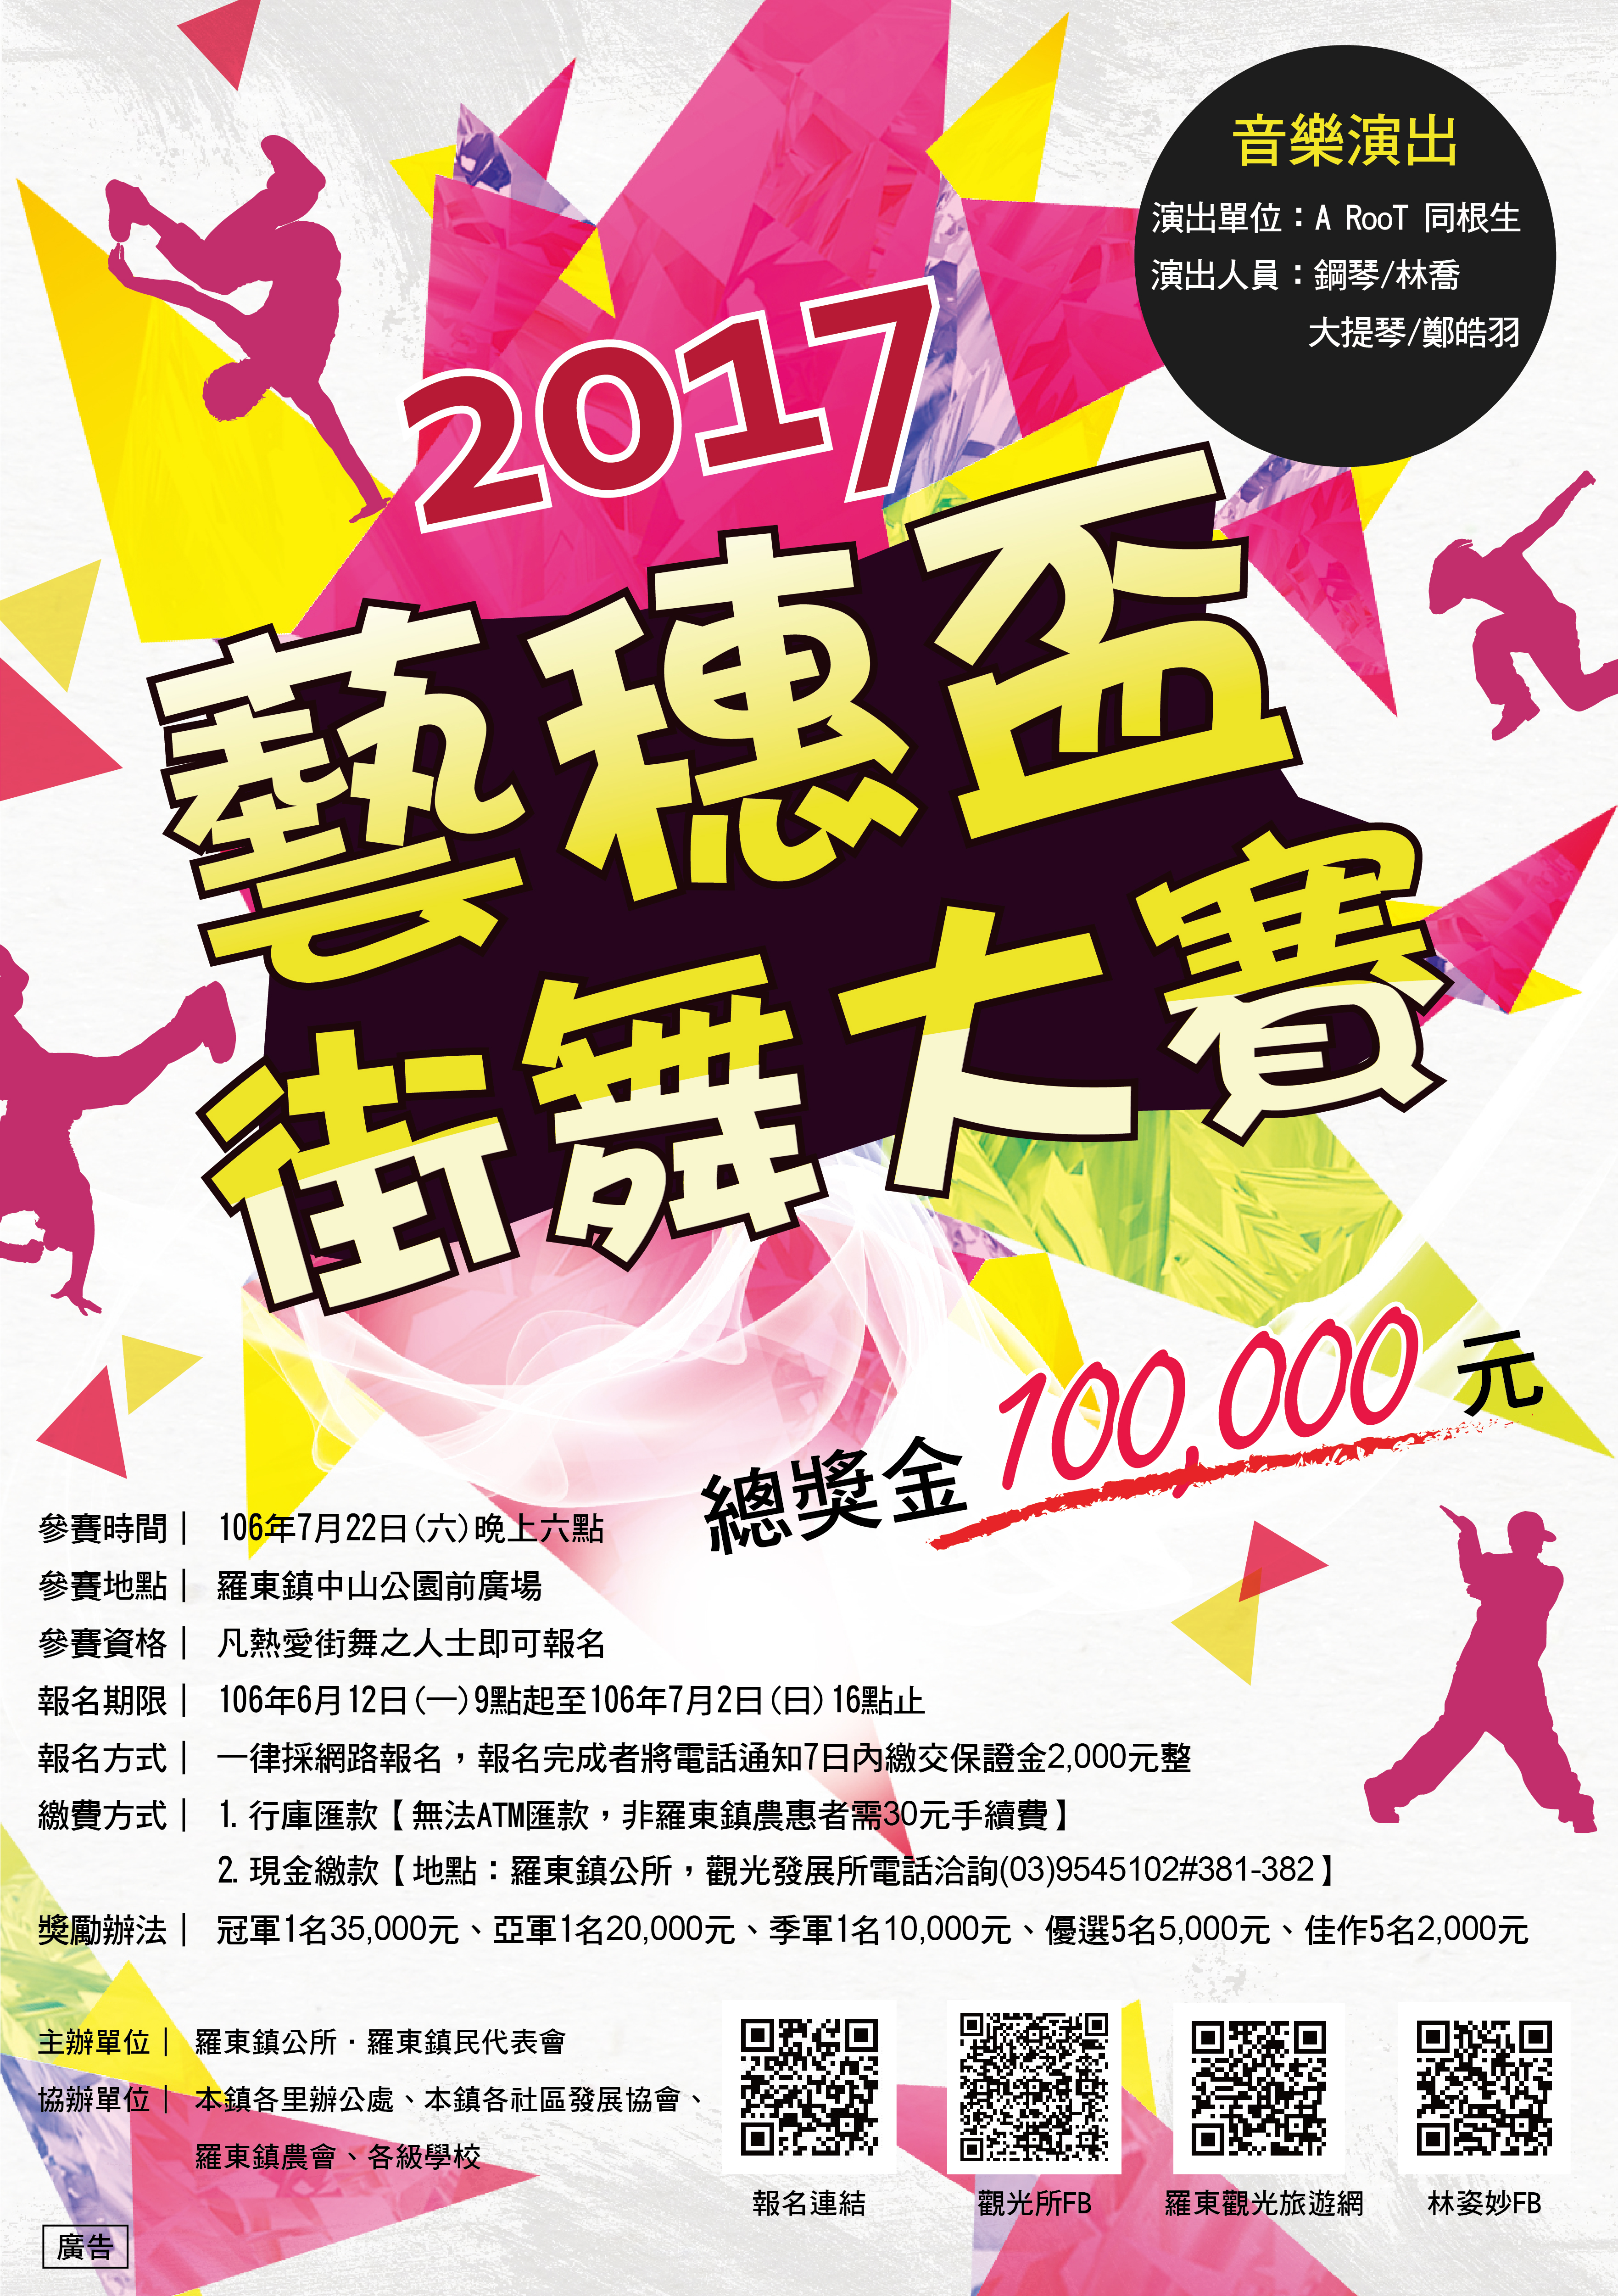 2017羅東藝穗節—藝穗盃街舞大賽